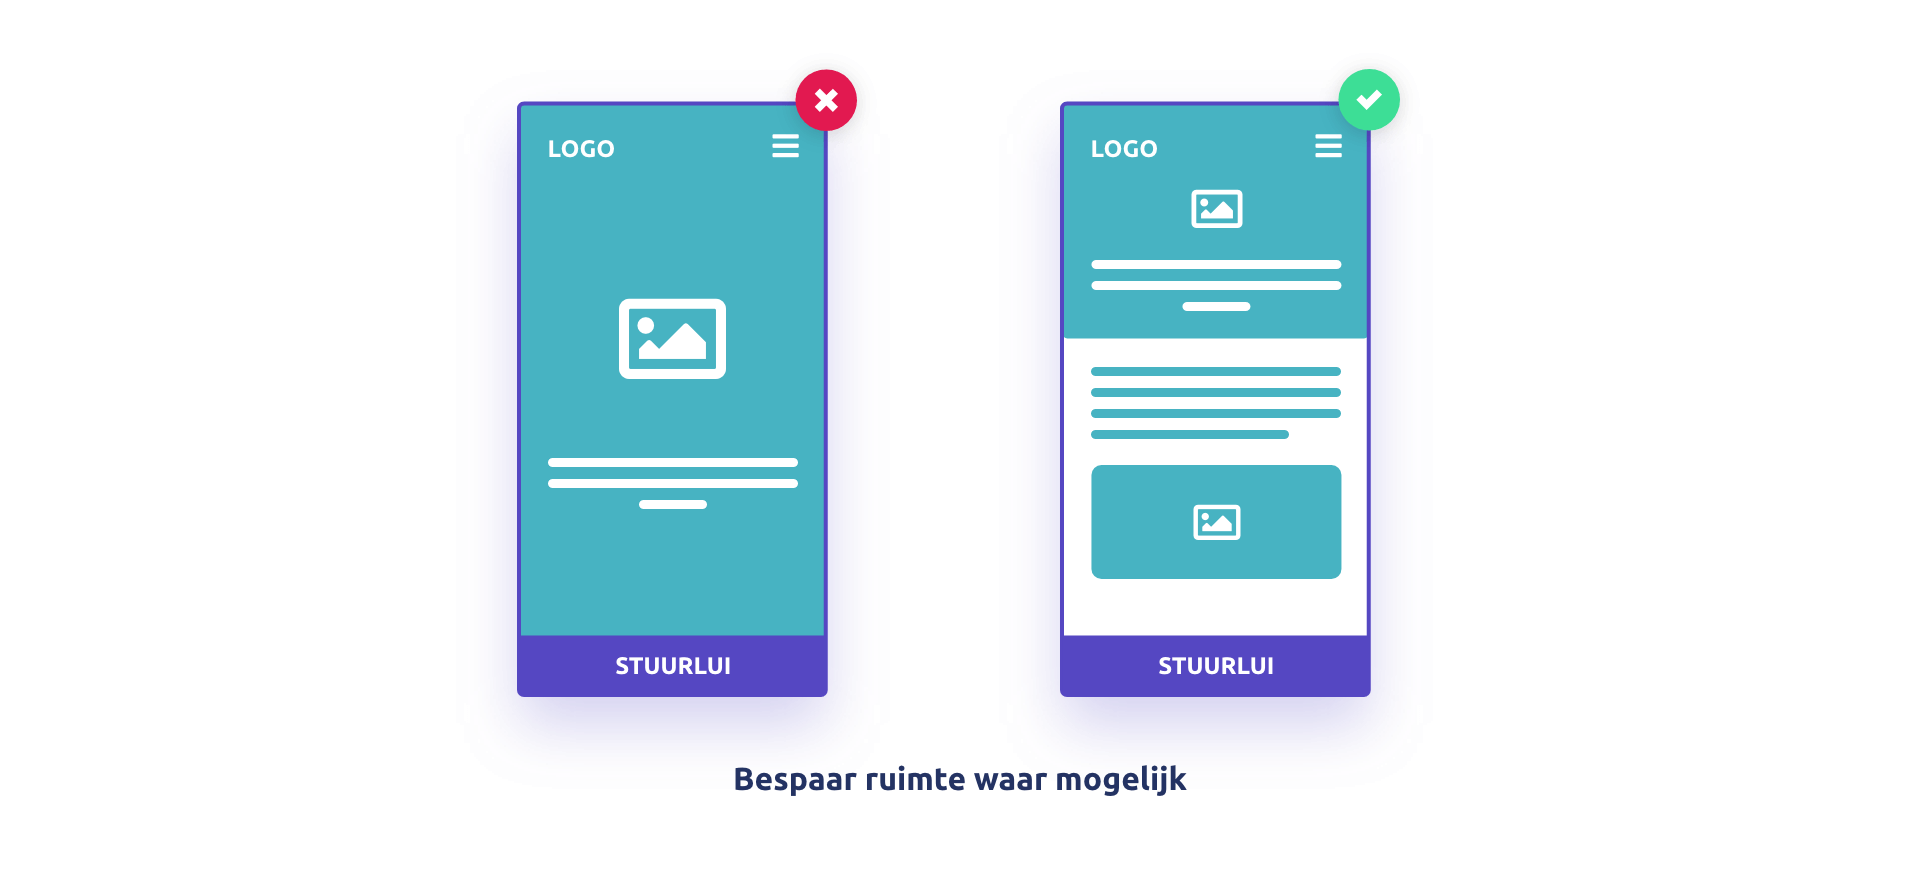 Mobile first webdesign – Bespaar ruimte waar mogelijk